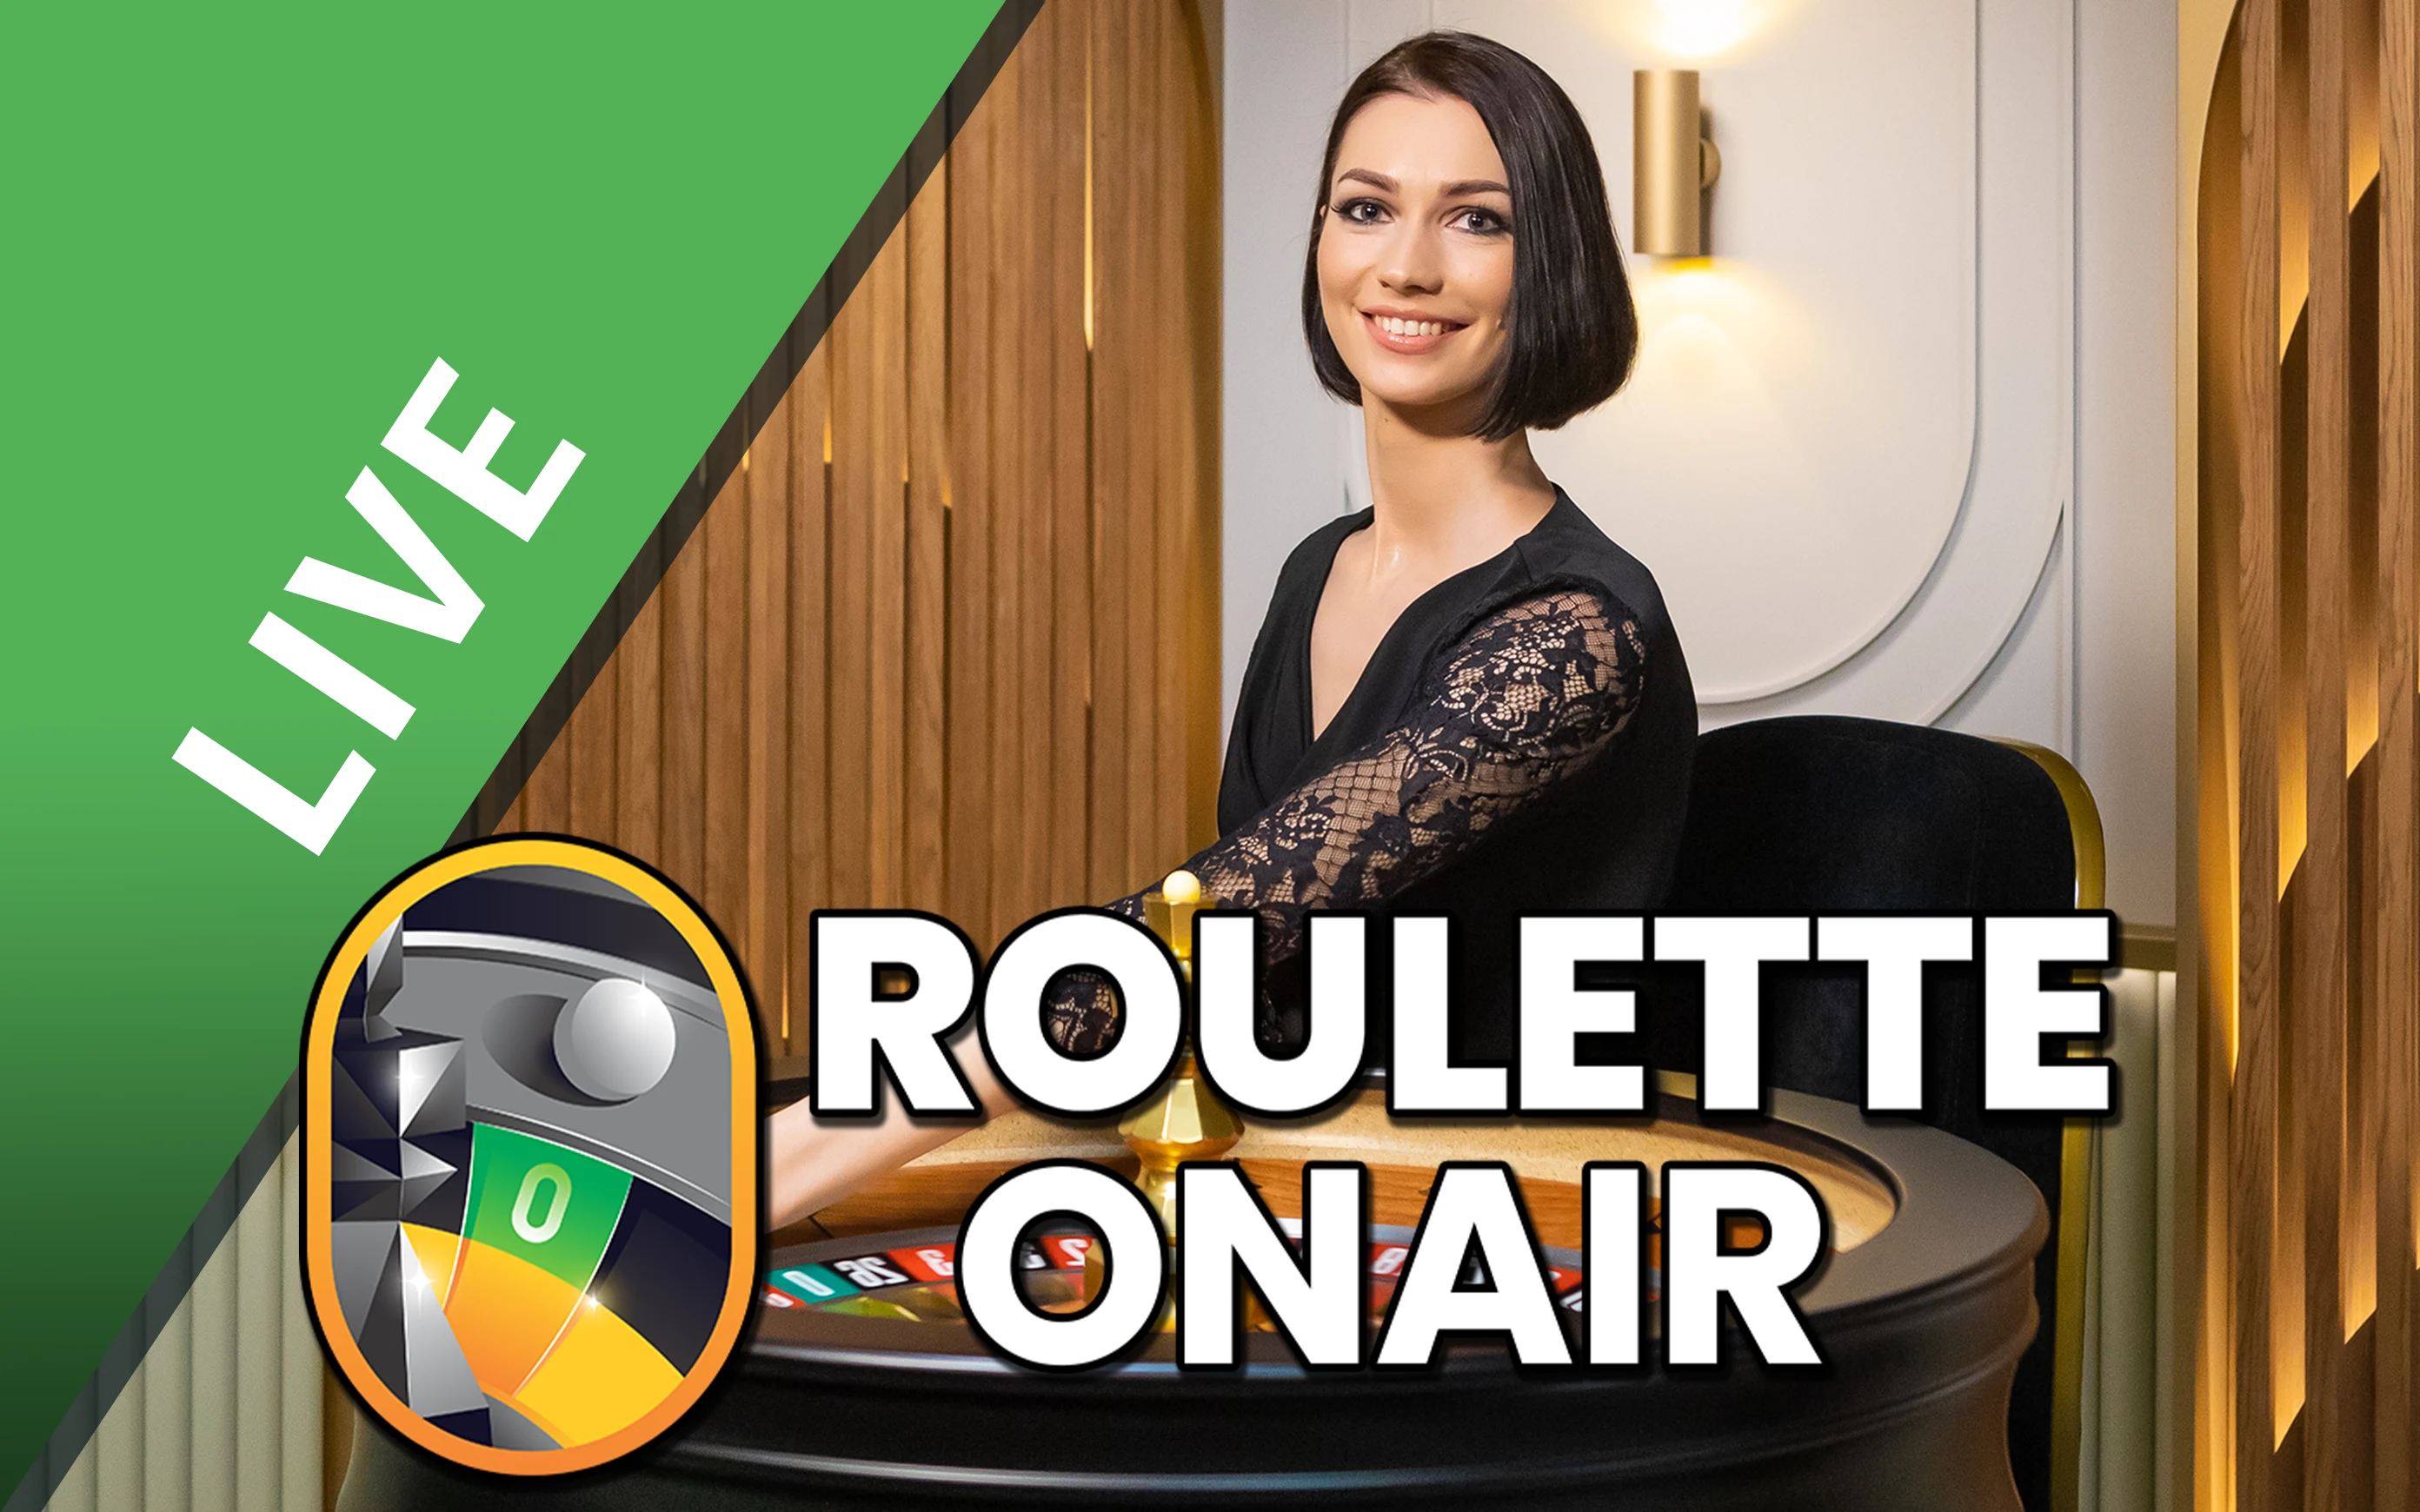 Gioca a Roulette OnAir sul casino online Starcasino.be